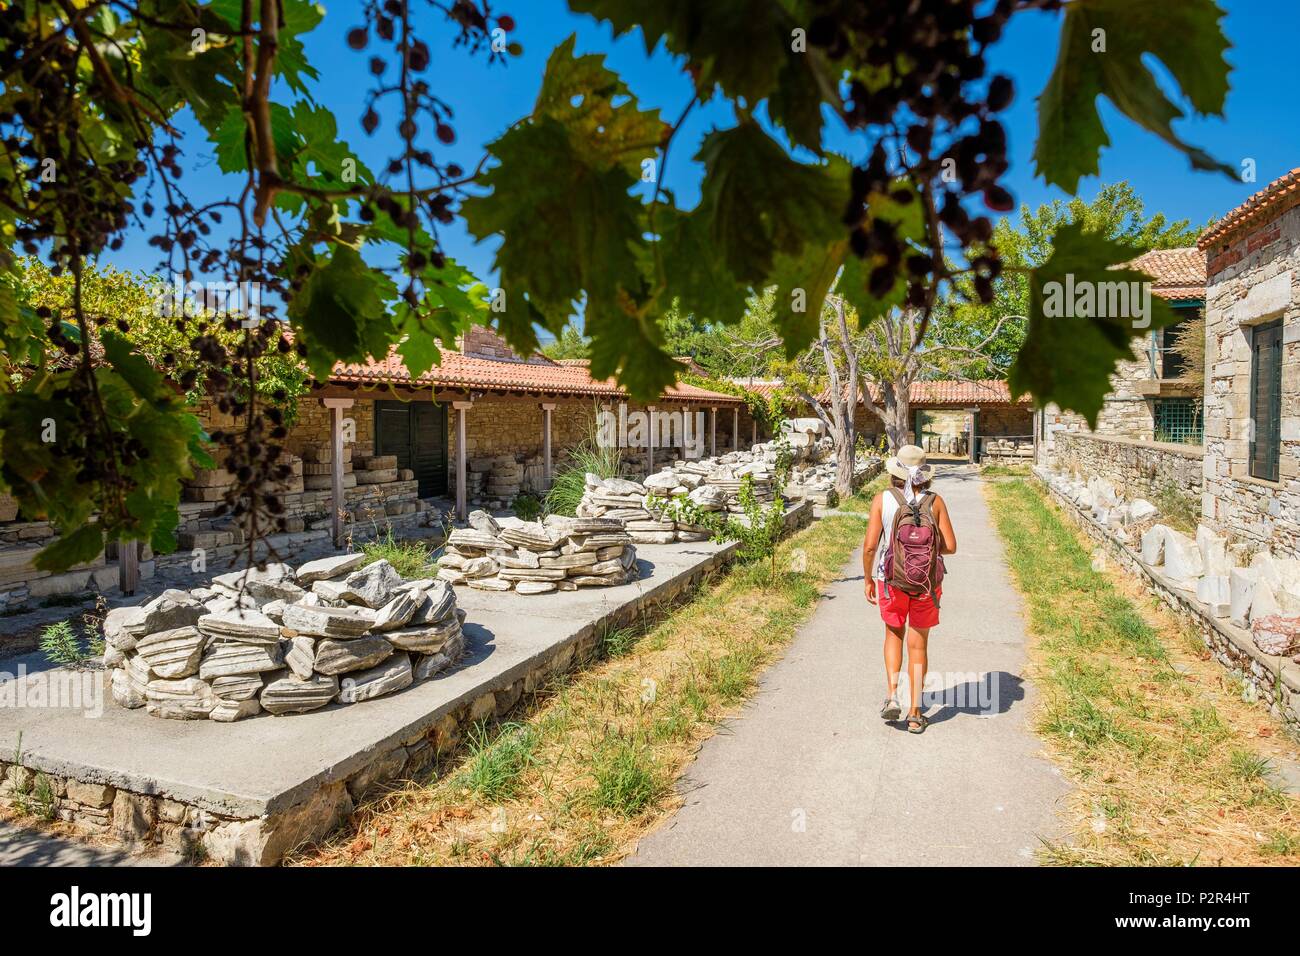 La Grecia, isola di Samos, l Heraion di Samos è uno dei più importanti ioniche giganti santuari della Grecia antica, dedicato alla dea Hera (patrimonio mondiale dell'UNESCO), piccolo museo Foto Stock